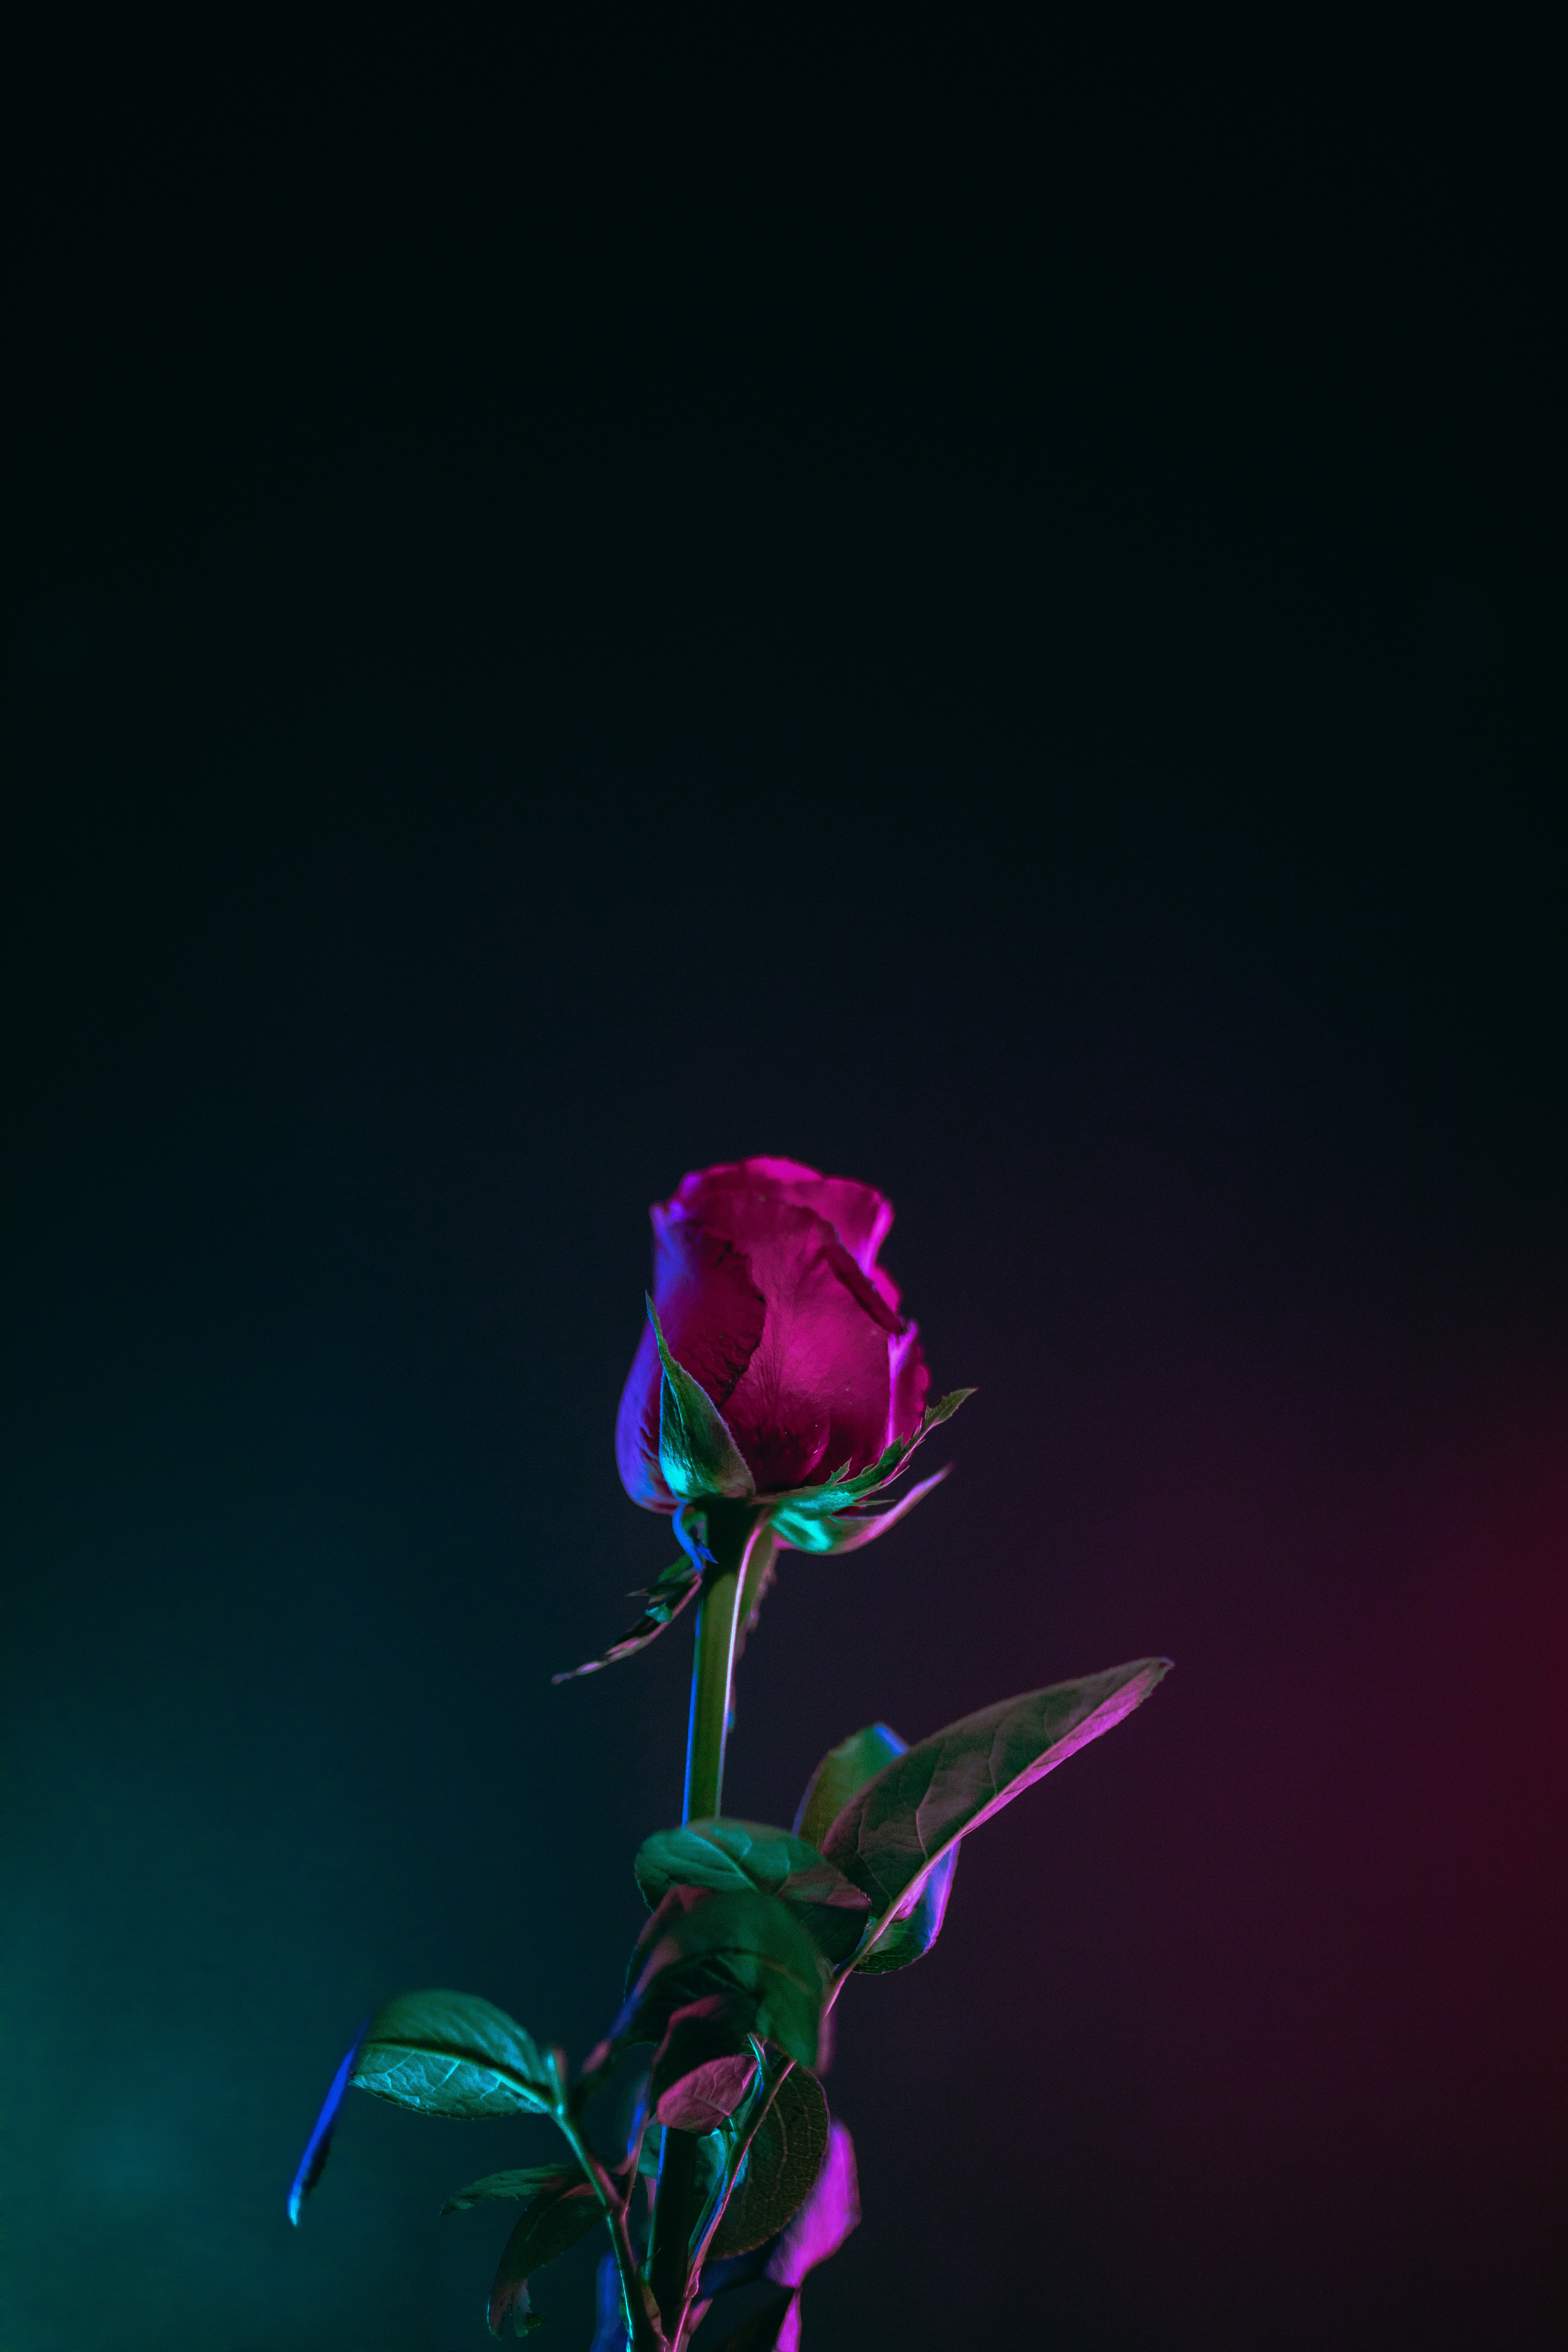 rose flower, dark background, leaves, flowers, rose, bud, stem, stalk wallpaper for mobile